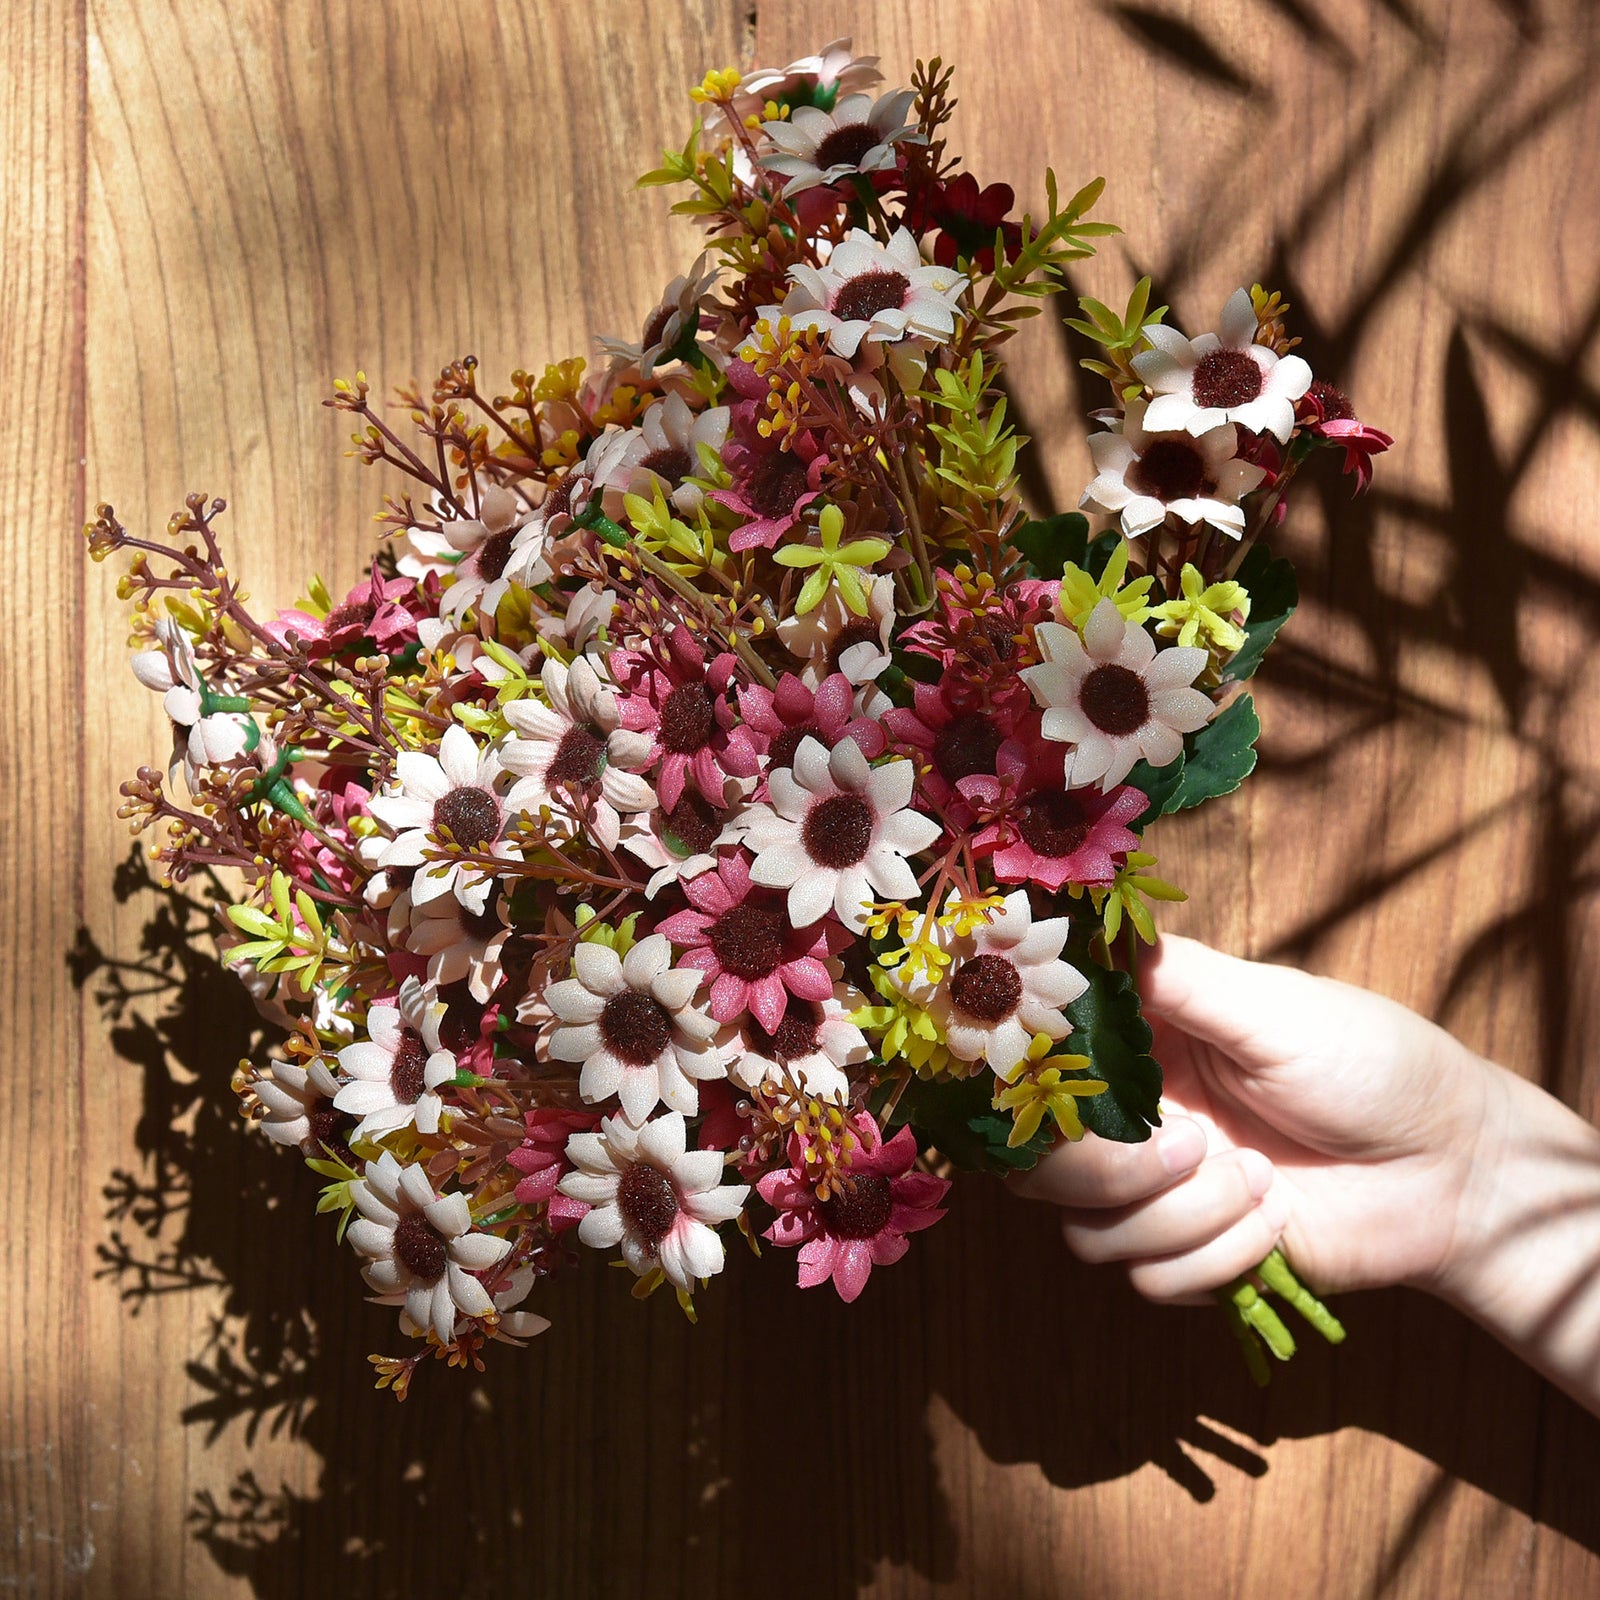 FiveSeasonStuff Daisy Silk Flowers, Outdoor Artificial Flowers Arrangement (4 Flower Bundles,) 13 inches Tall (Mixed Sweet Pinks)